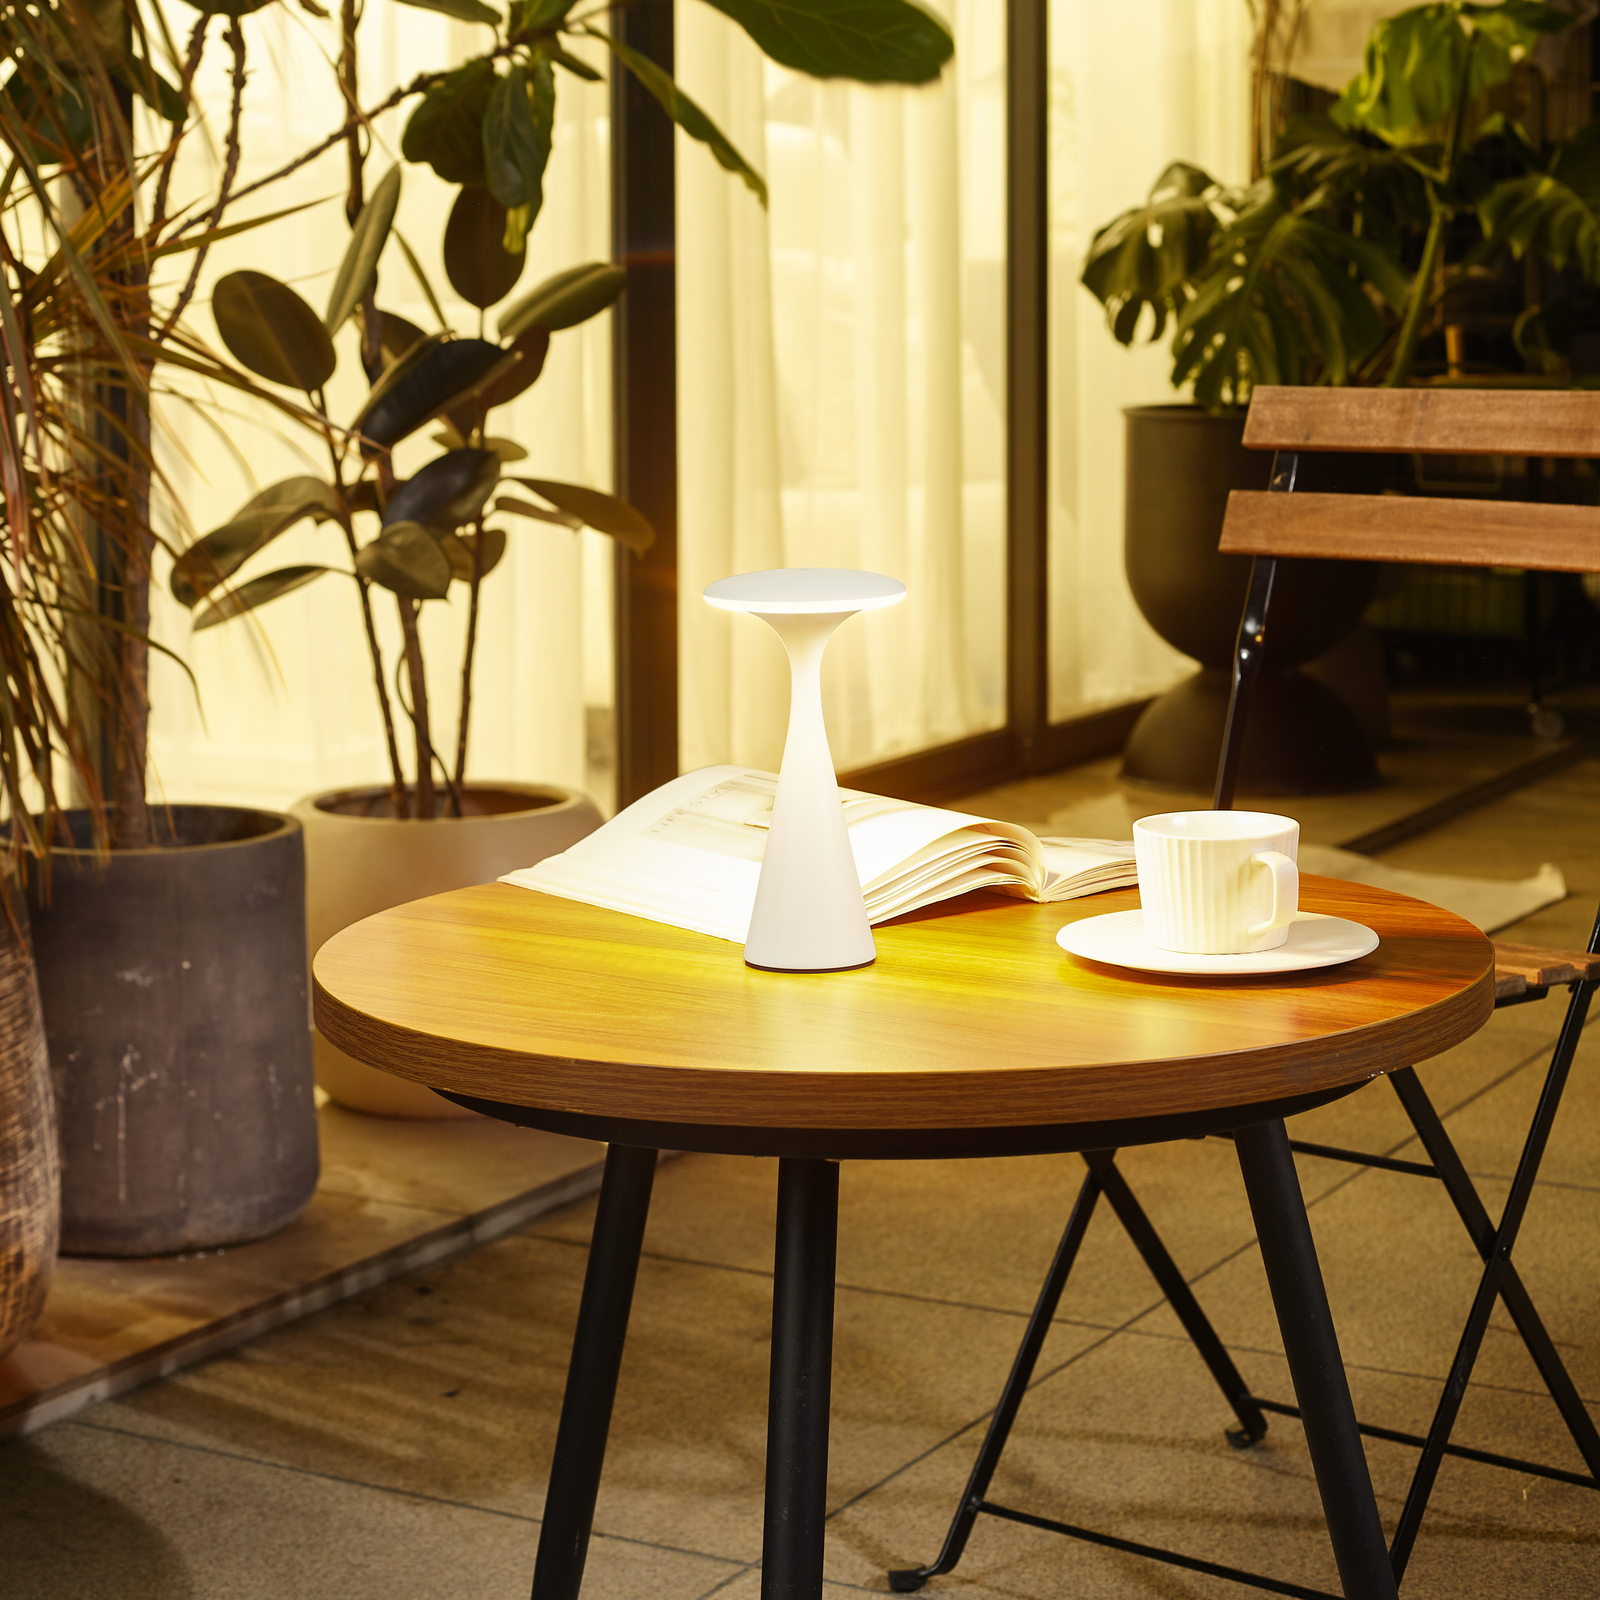 Candeeiro de mesa recarregável Lindby LED Evelen, branco, IP54, CCT